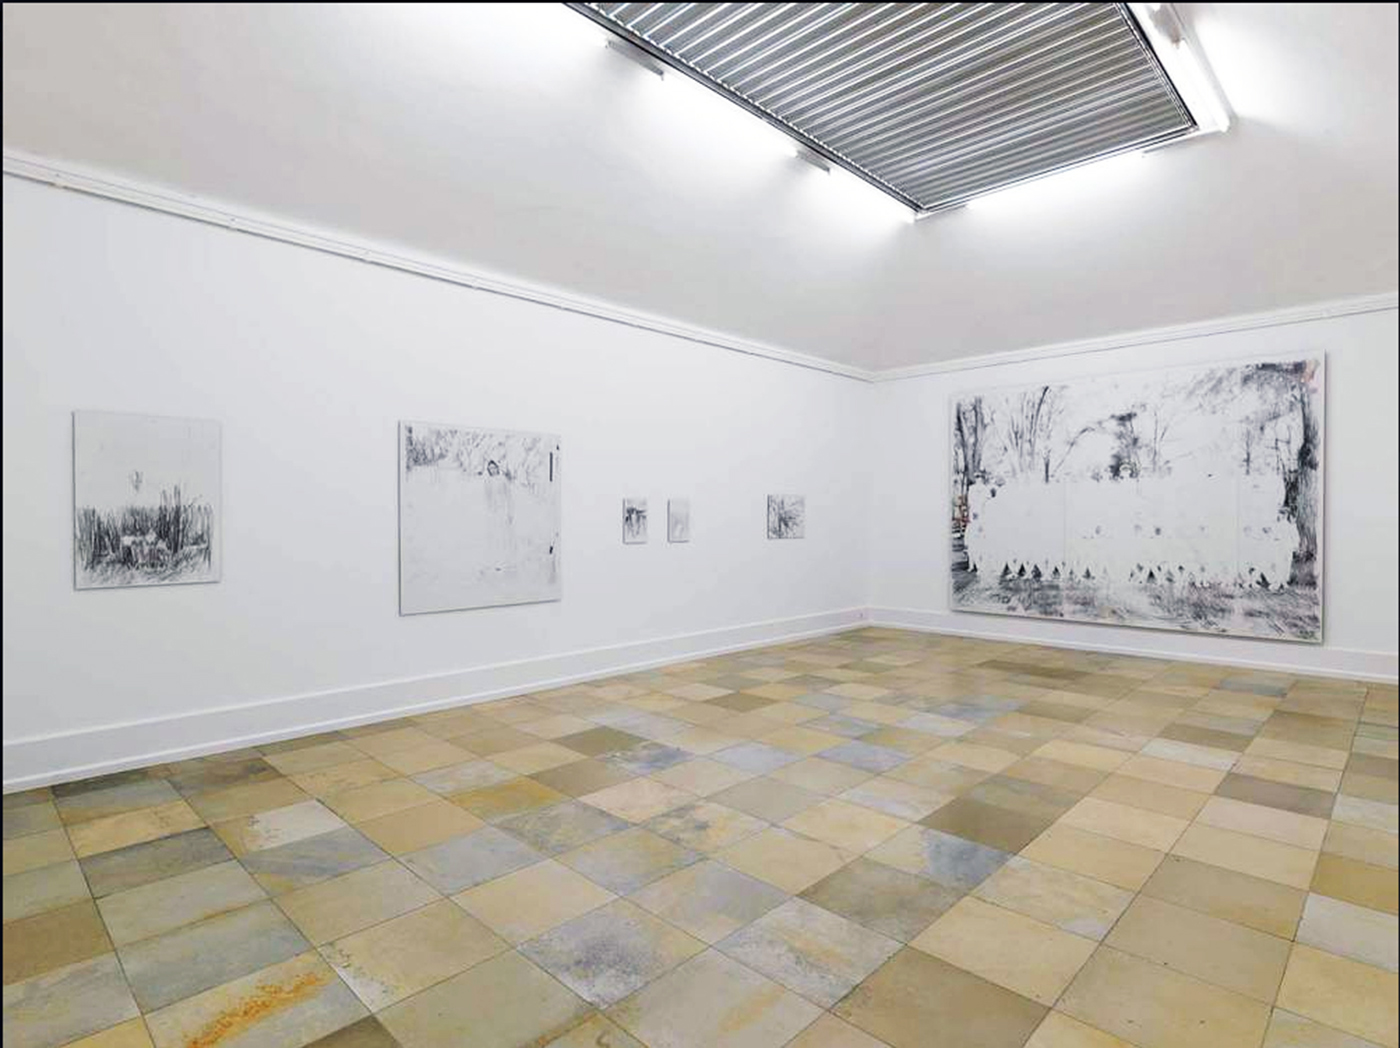 Martin Dammann - Exhibition views "Zum Resultat beruhigter Tumult", Kunsthalle Nuremberg, Germany, 2015